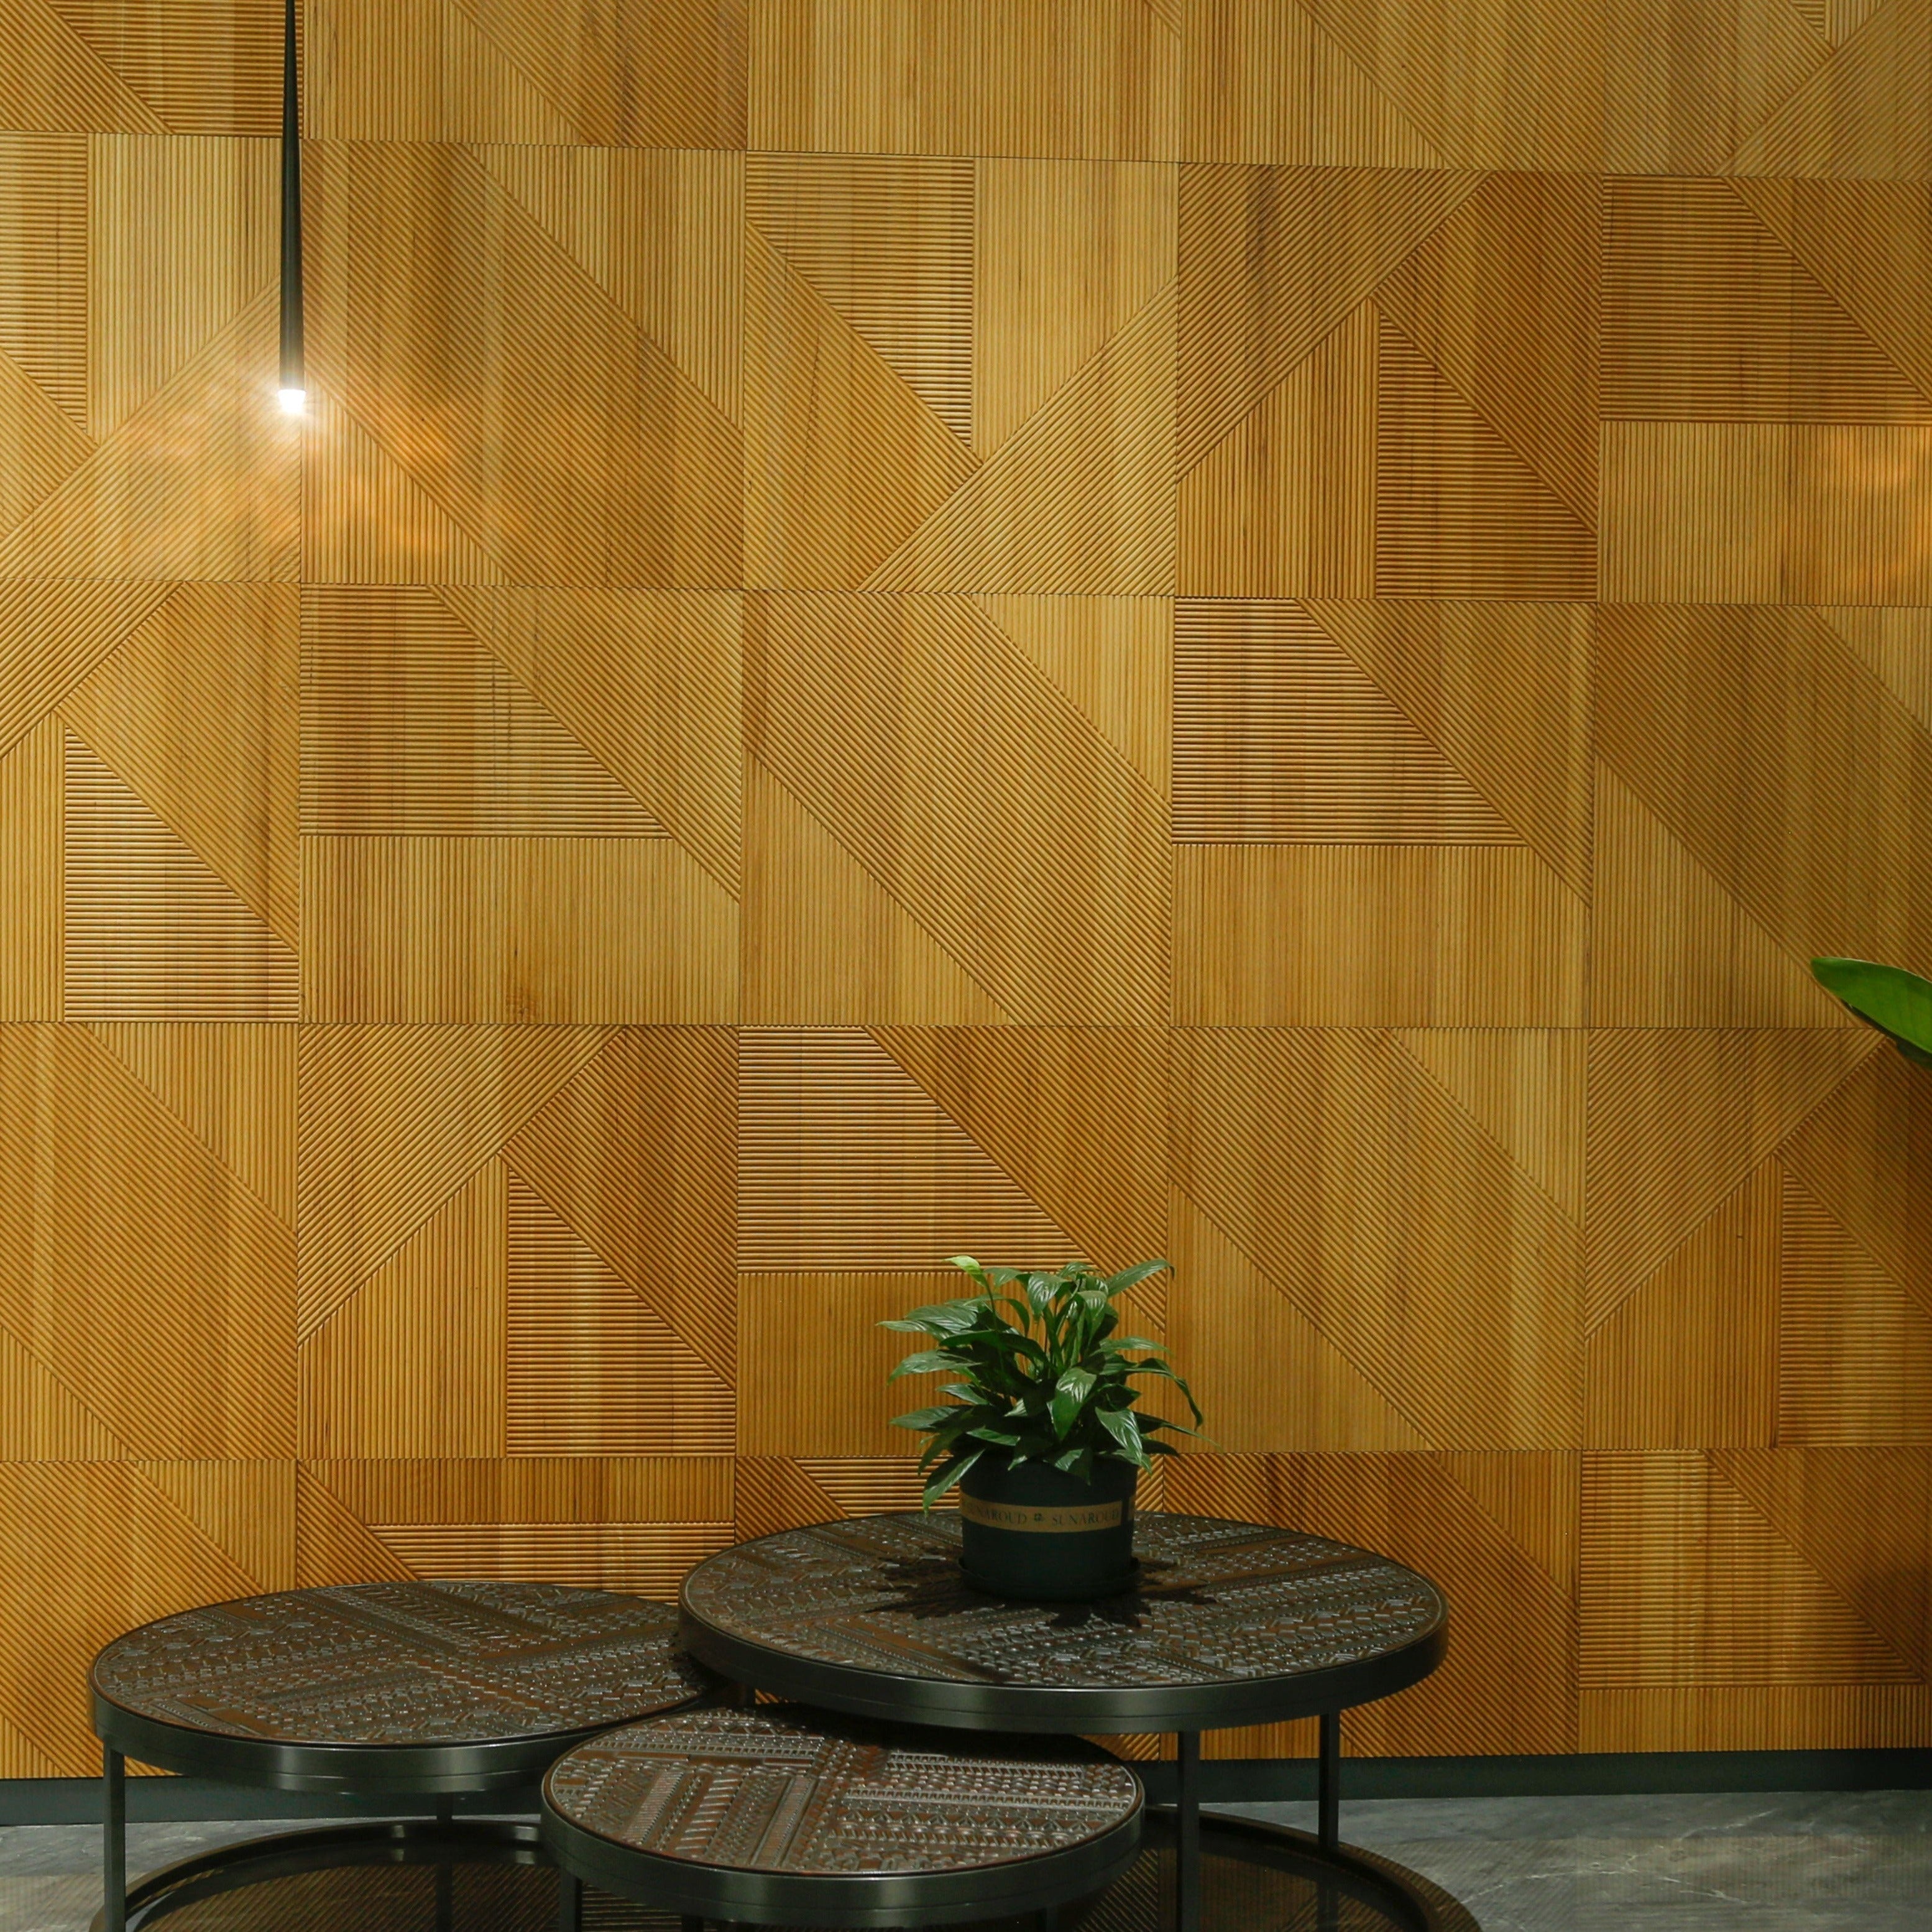 Fangorn Wooden Wall Panels